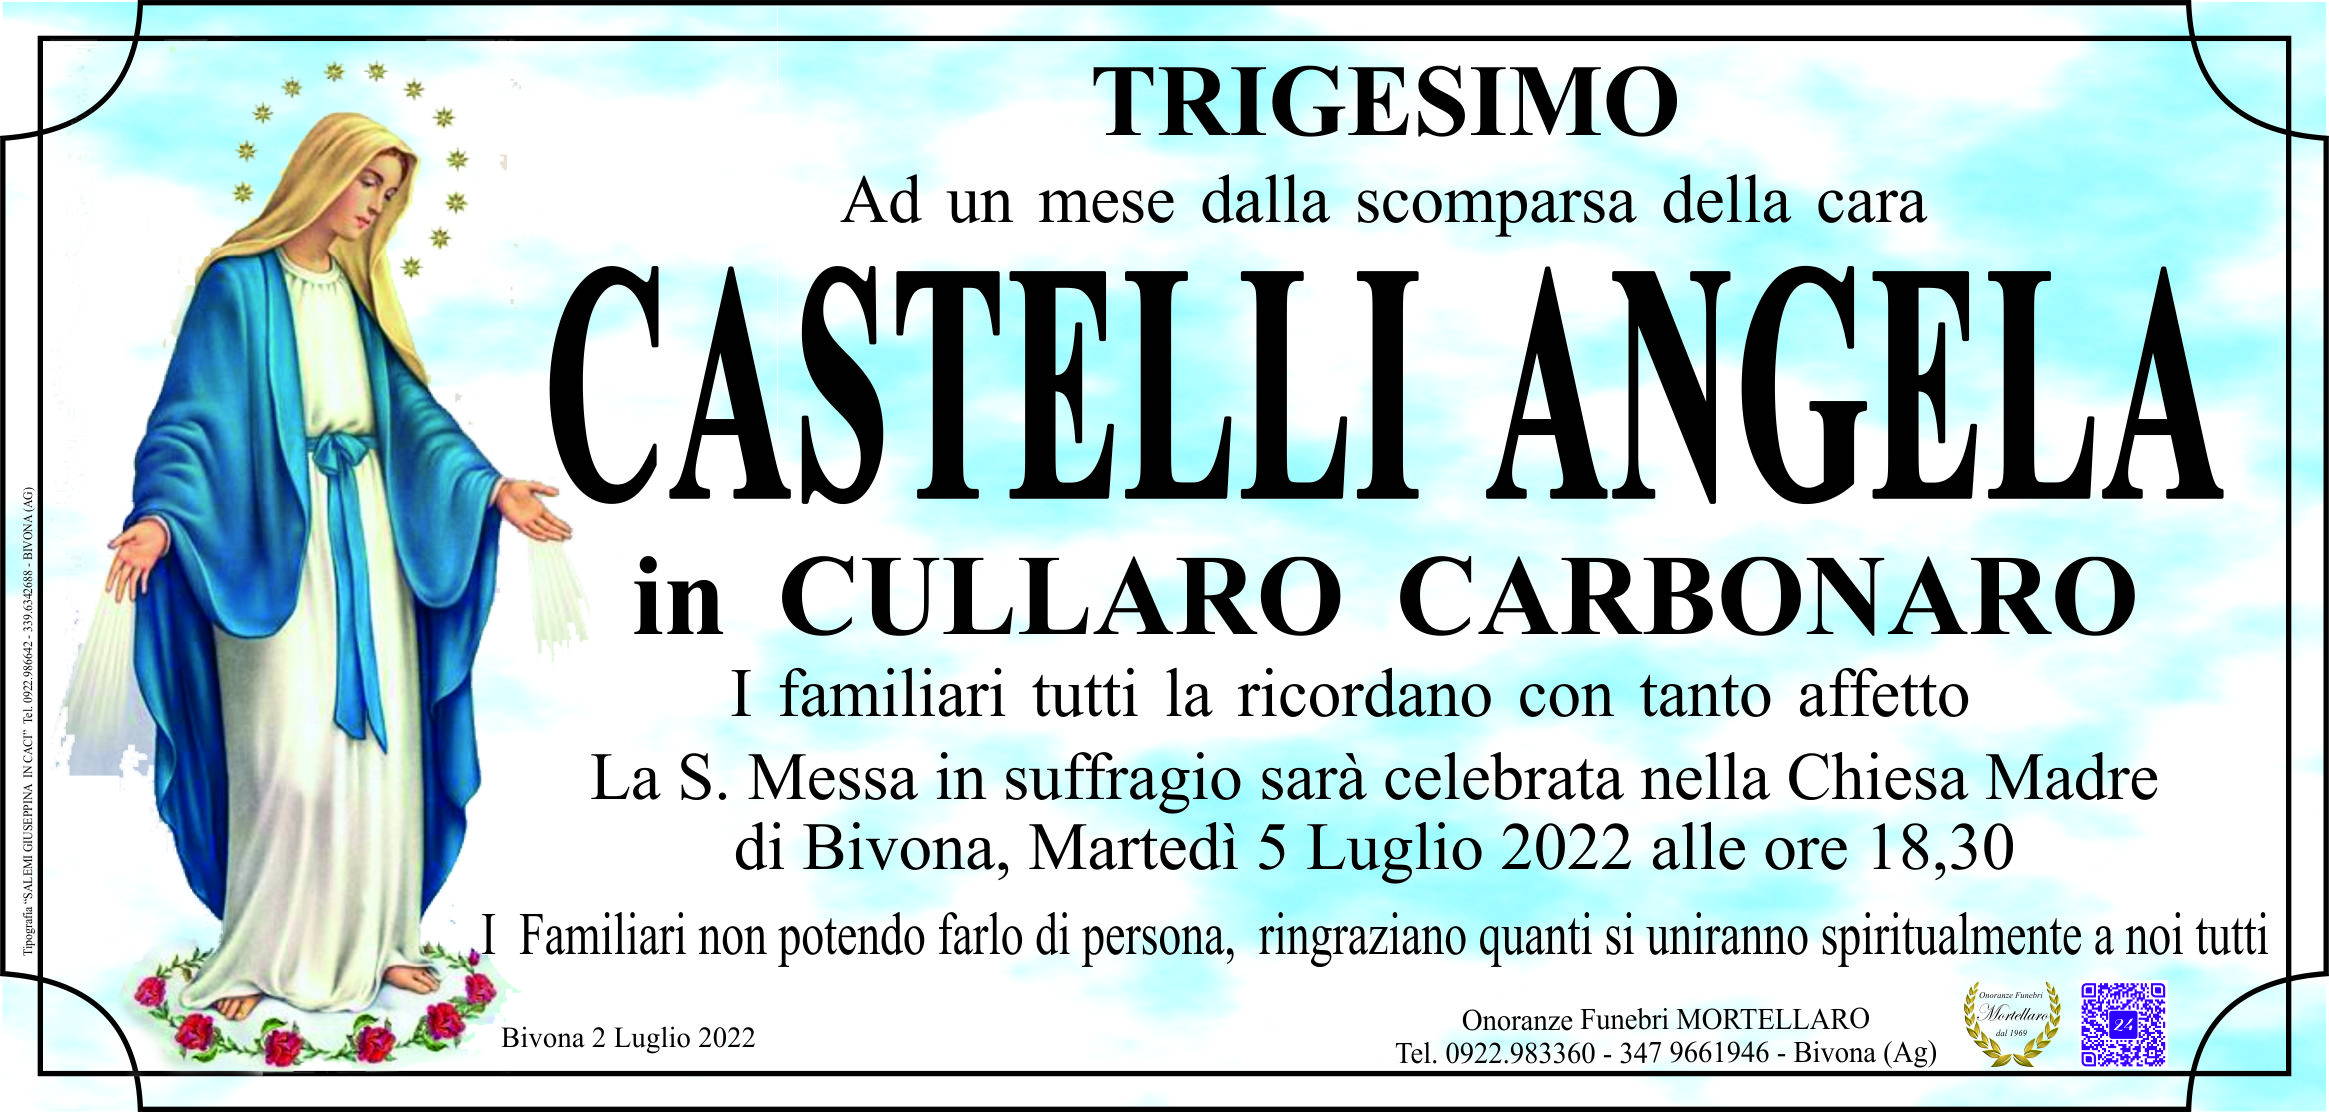 Angela Castelli